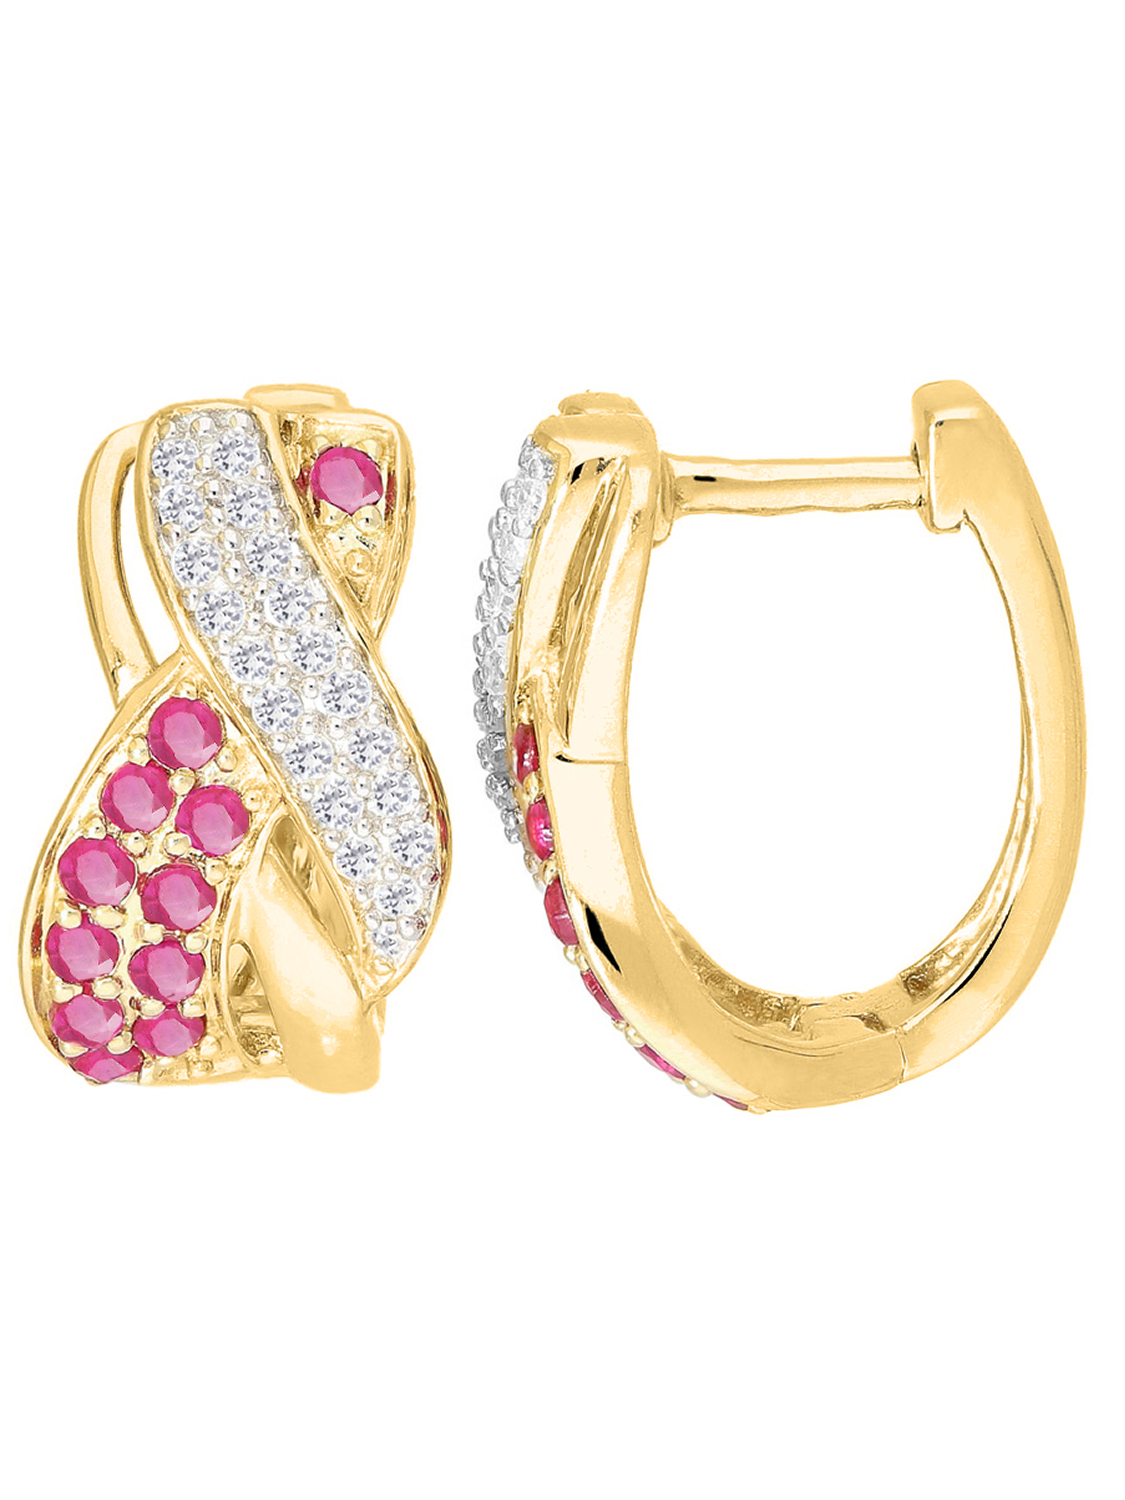 Damencreolen aus echtem Gelbgold mit Diamant und Rubin Edelsteinen | Detailansicht